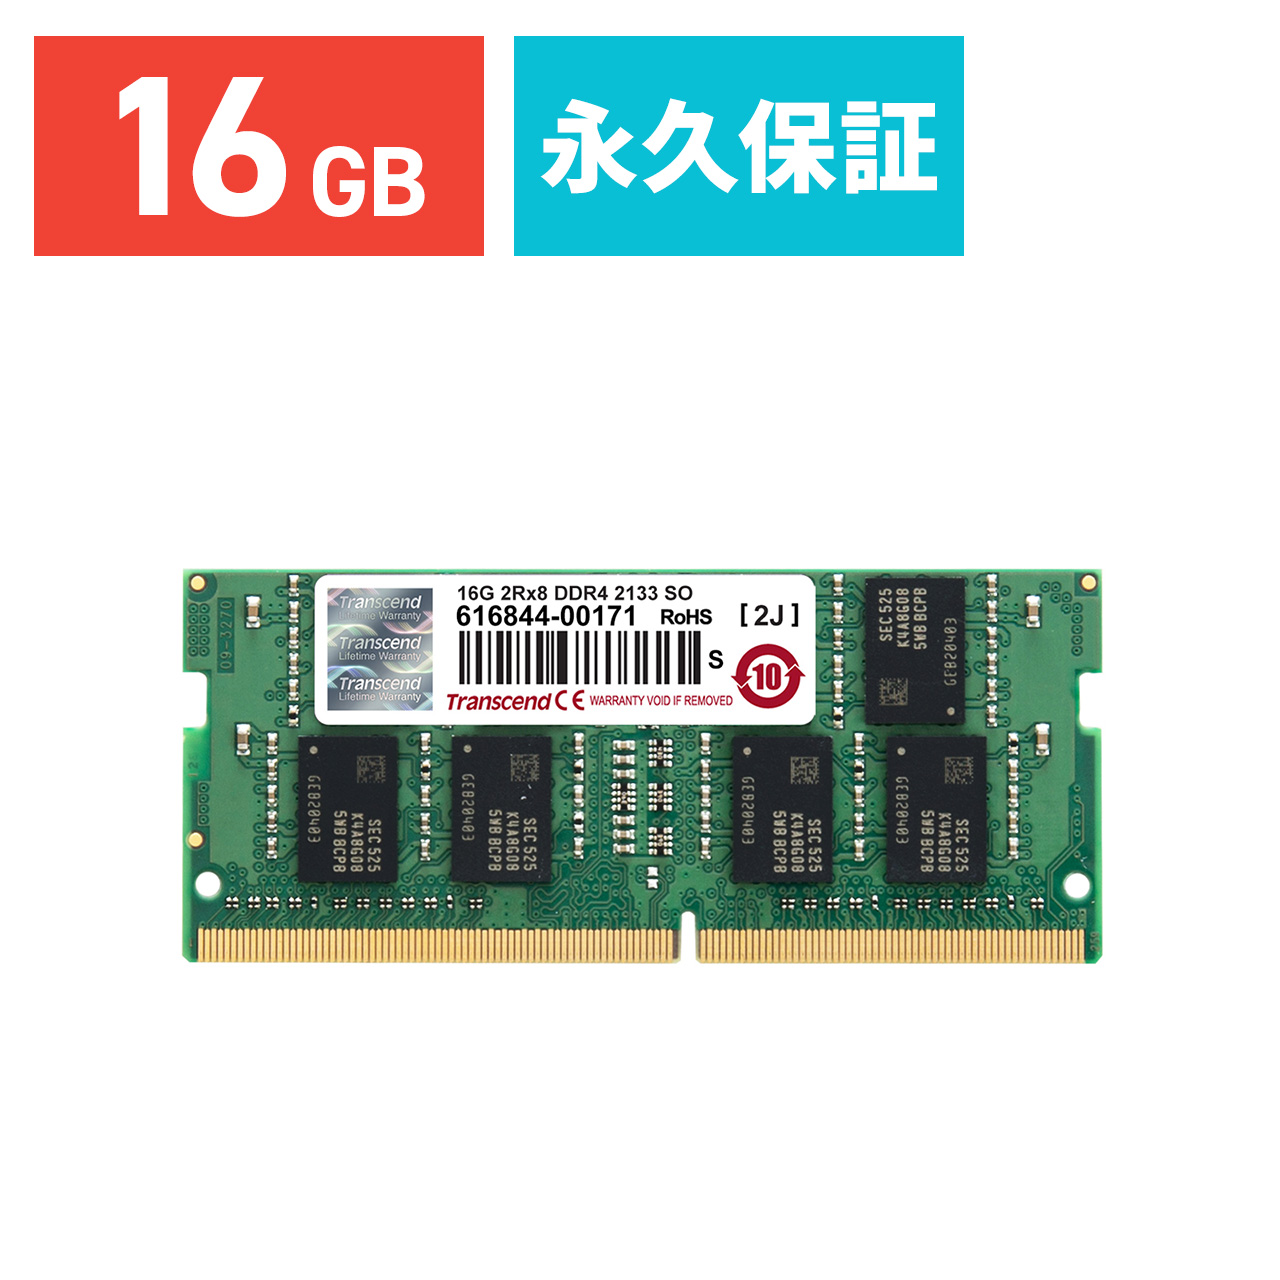 話題の行列 crucial ノートPC用増設メモリ 16GB 8GBx2枚 DDR4 2400MT s